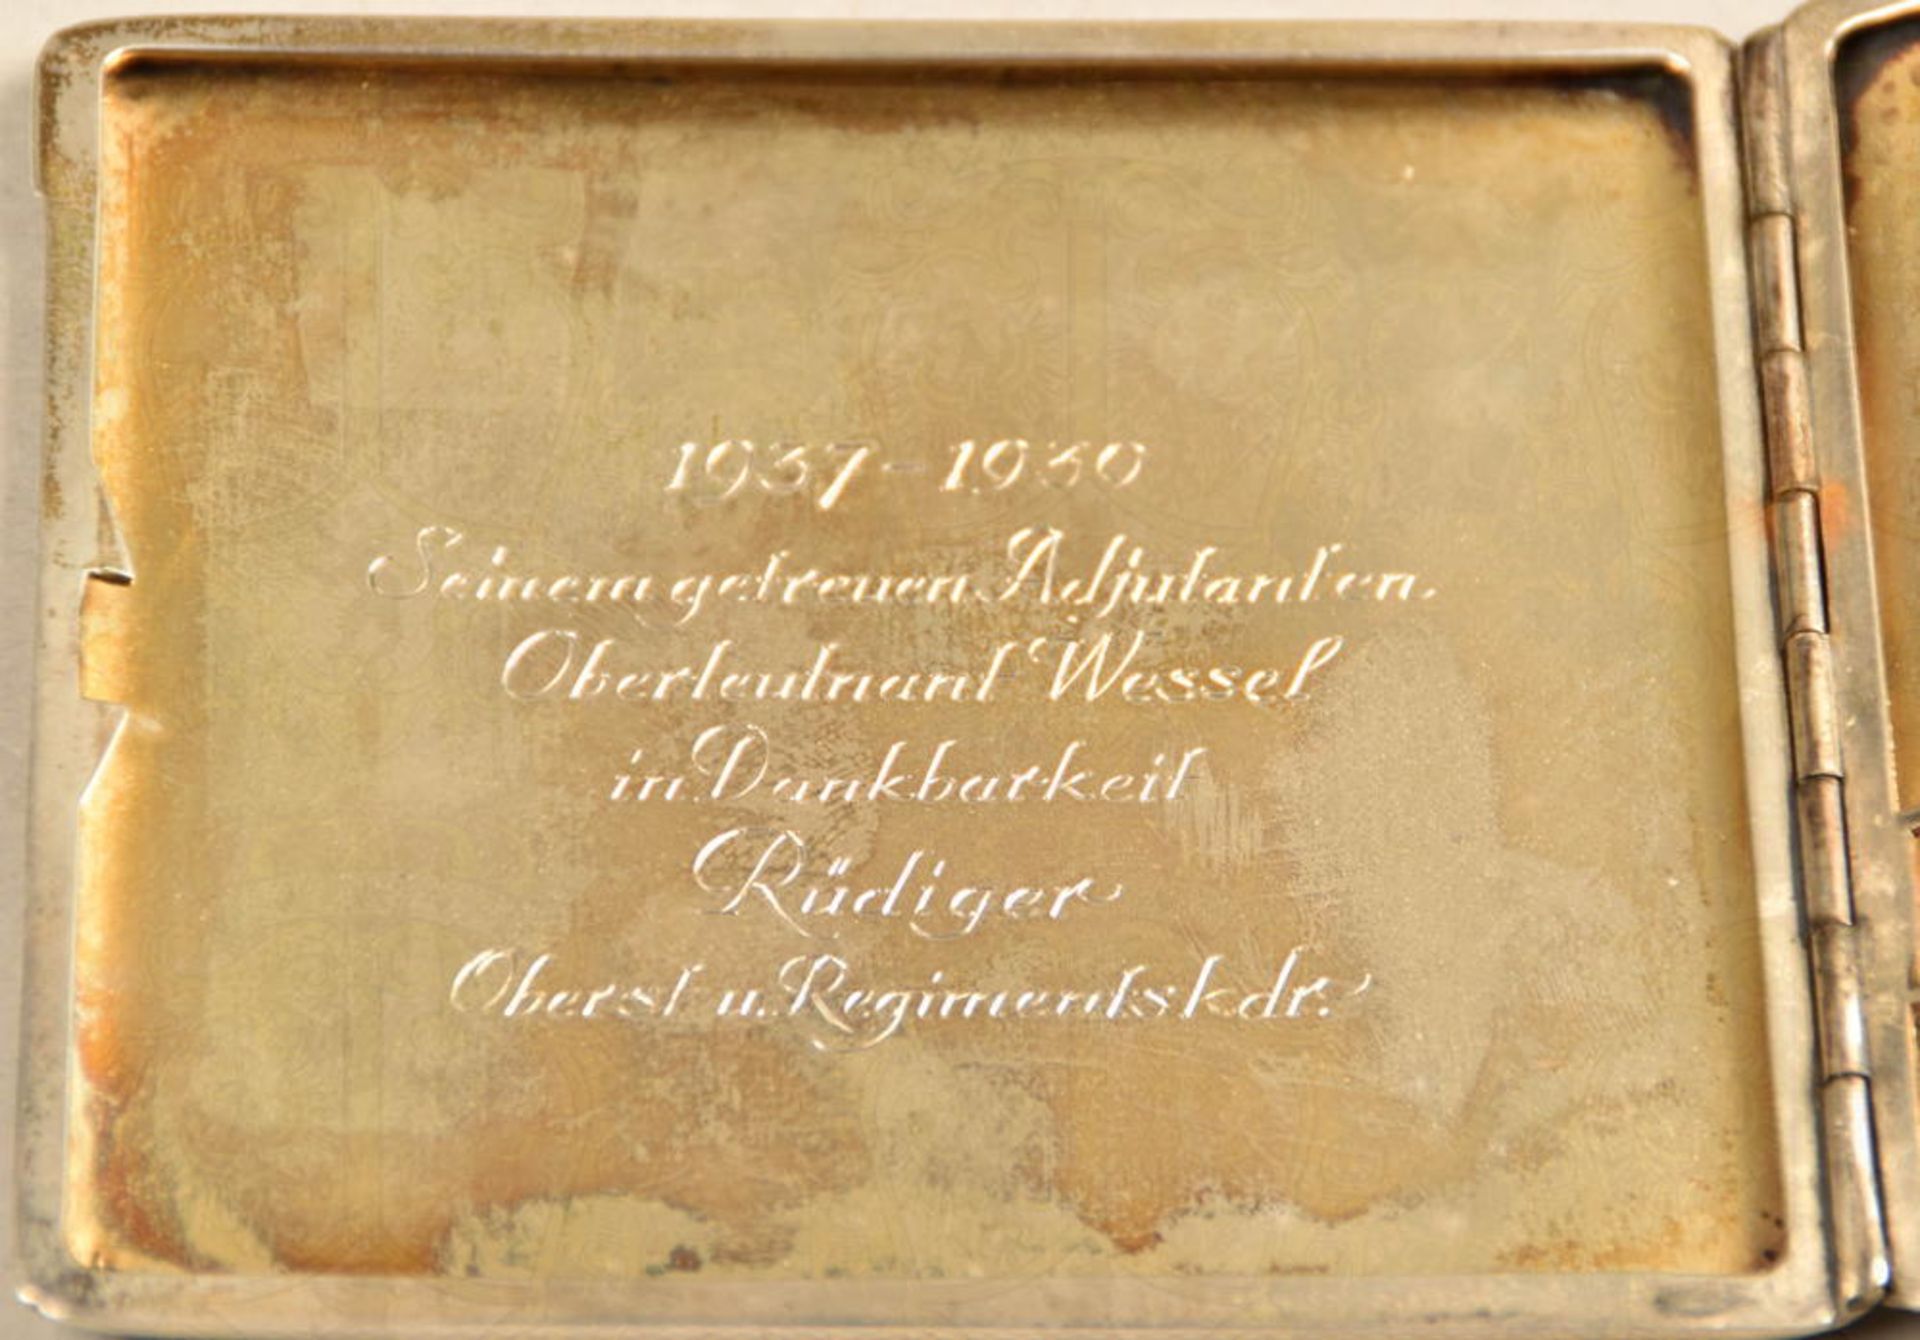 OFFIZIERSGESCHENK-ZIGARETTENETUI GERHARD WESSEL - Image 4 of 6